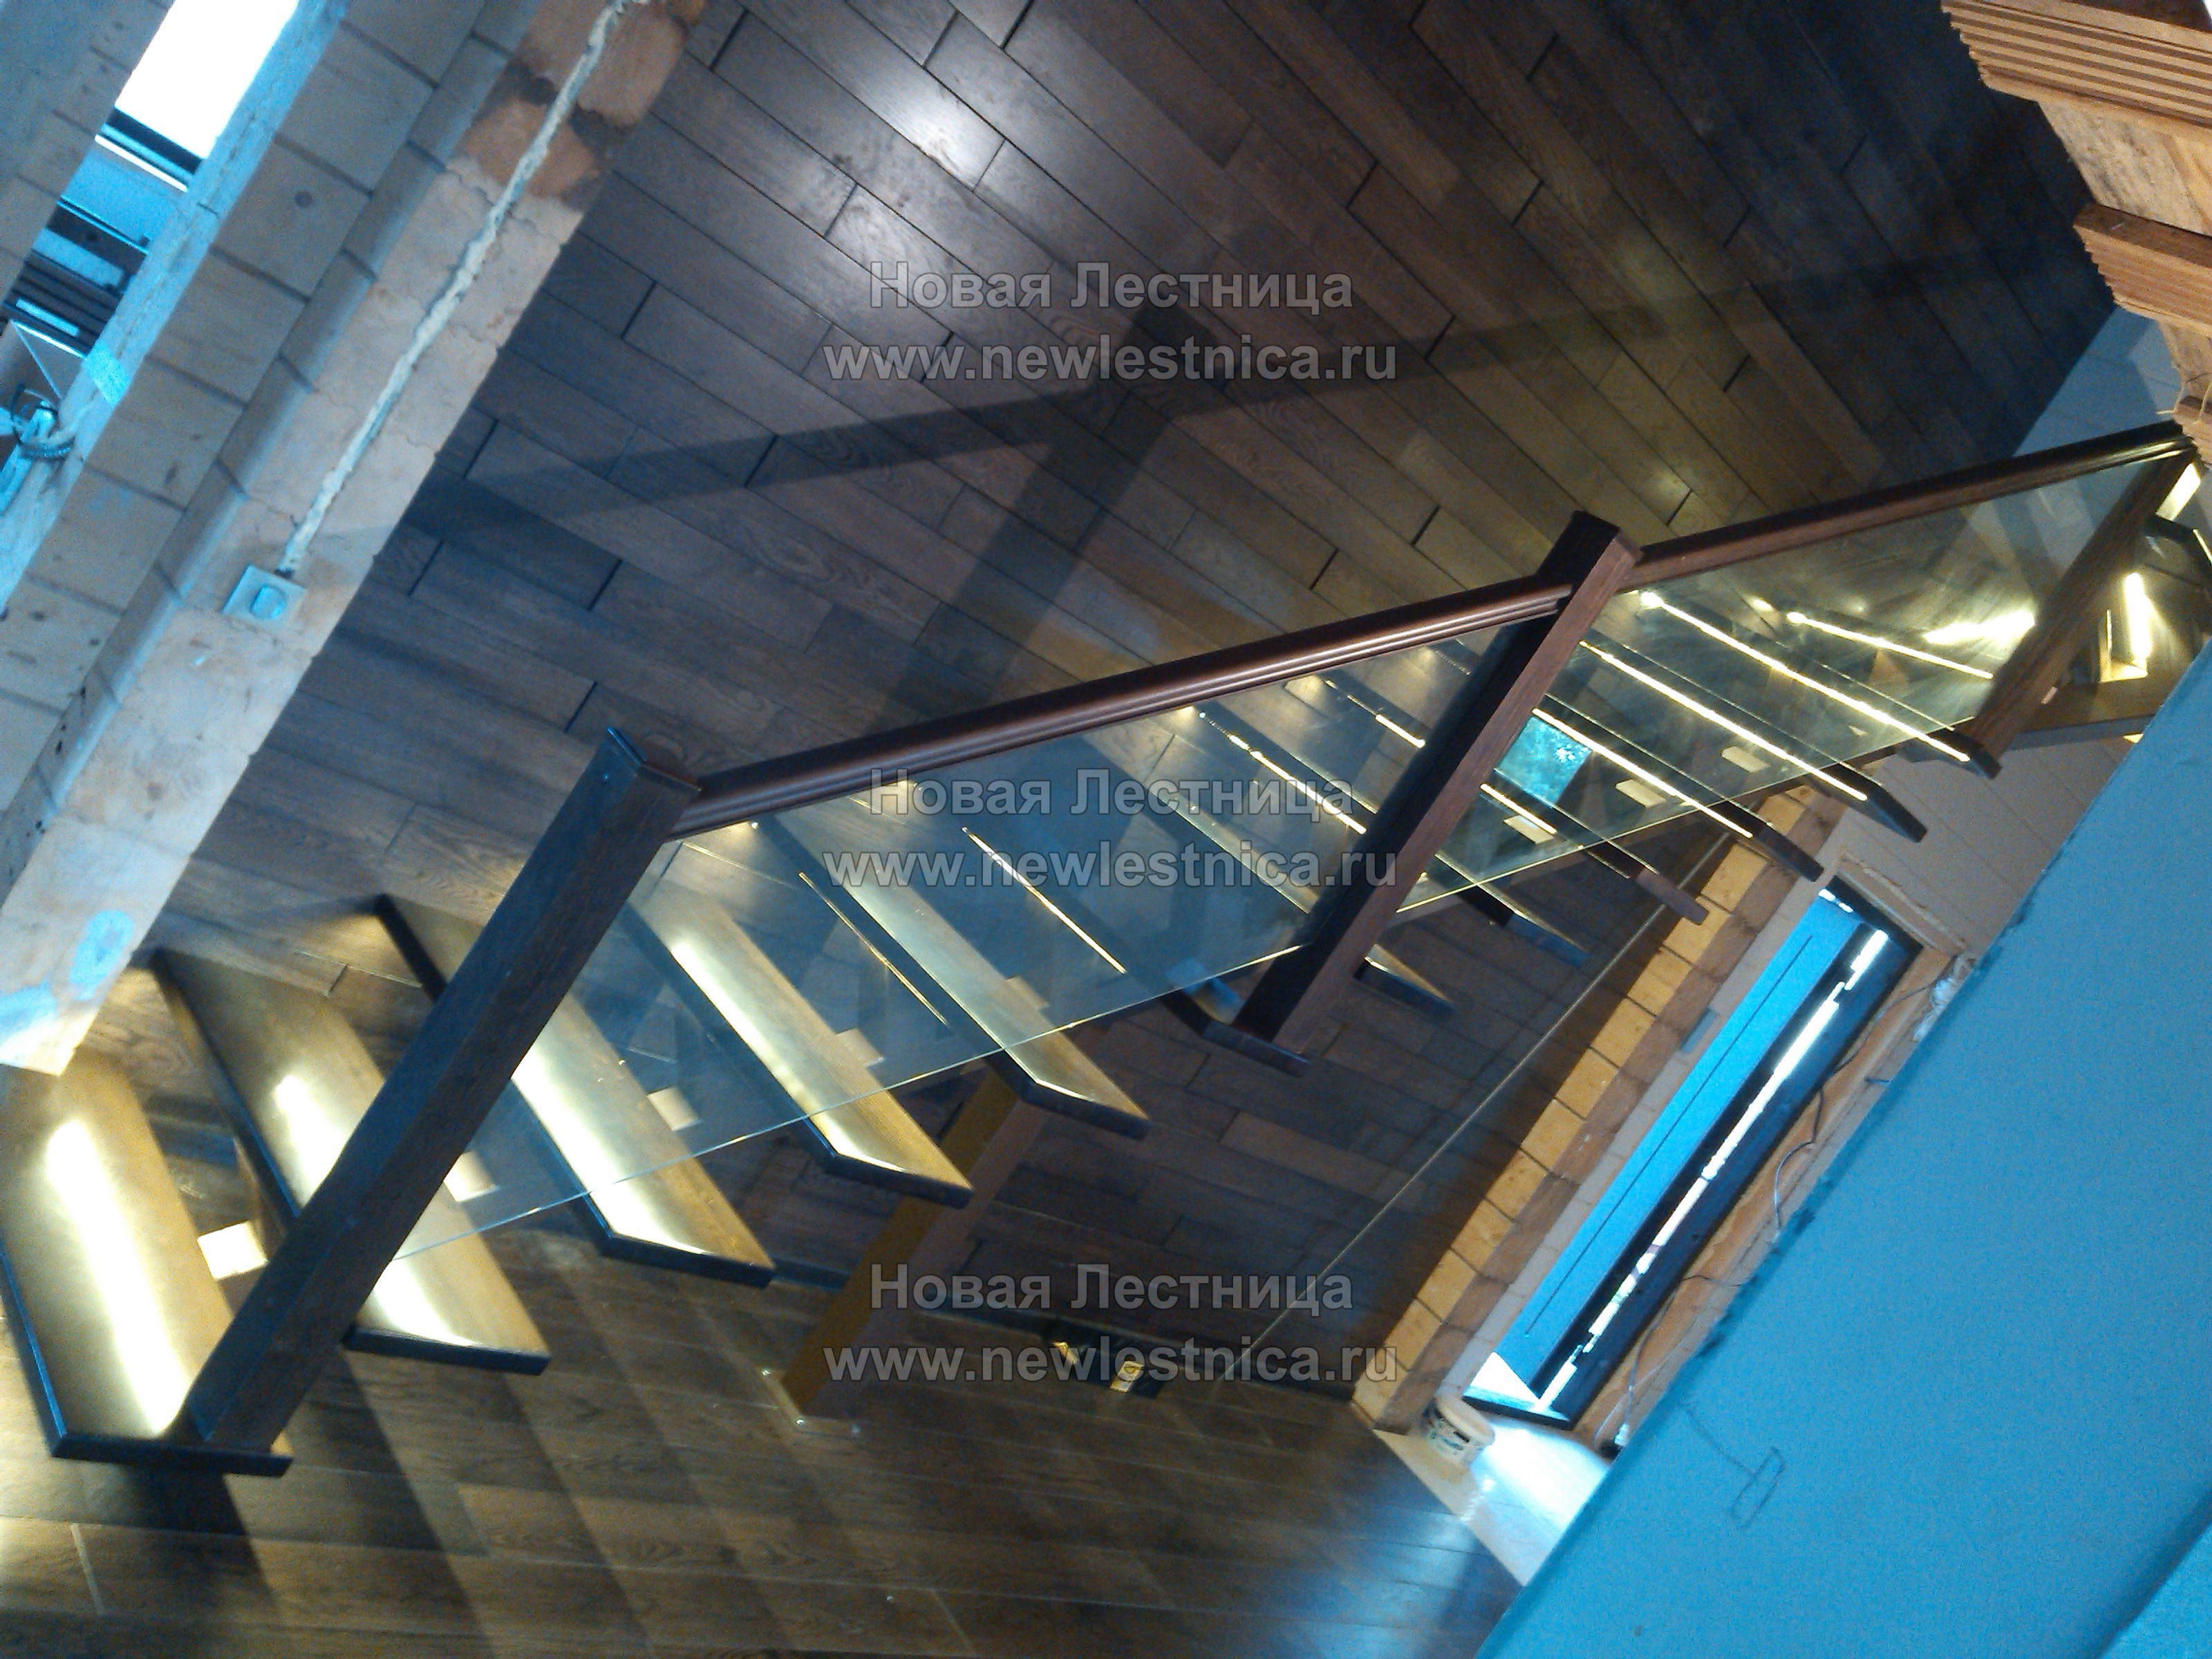 Лестница на монокосоуре со стеклянными ограждениями (Фото)